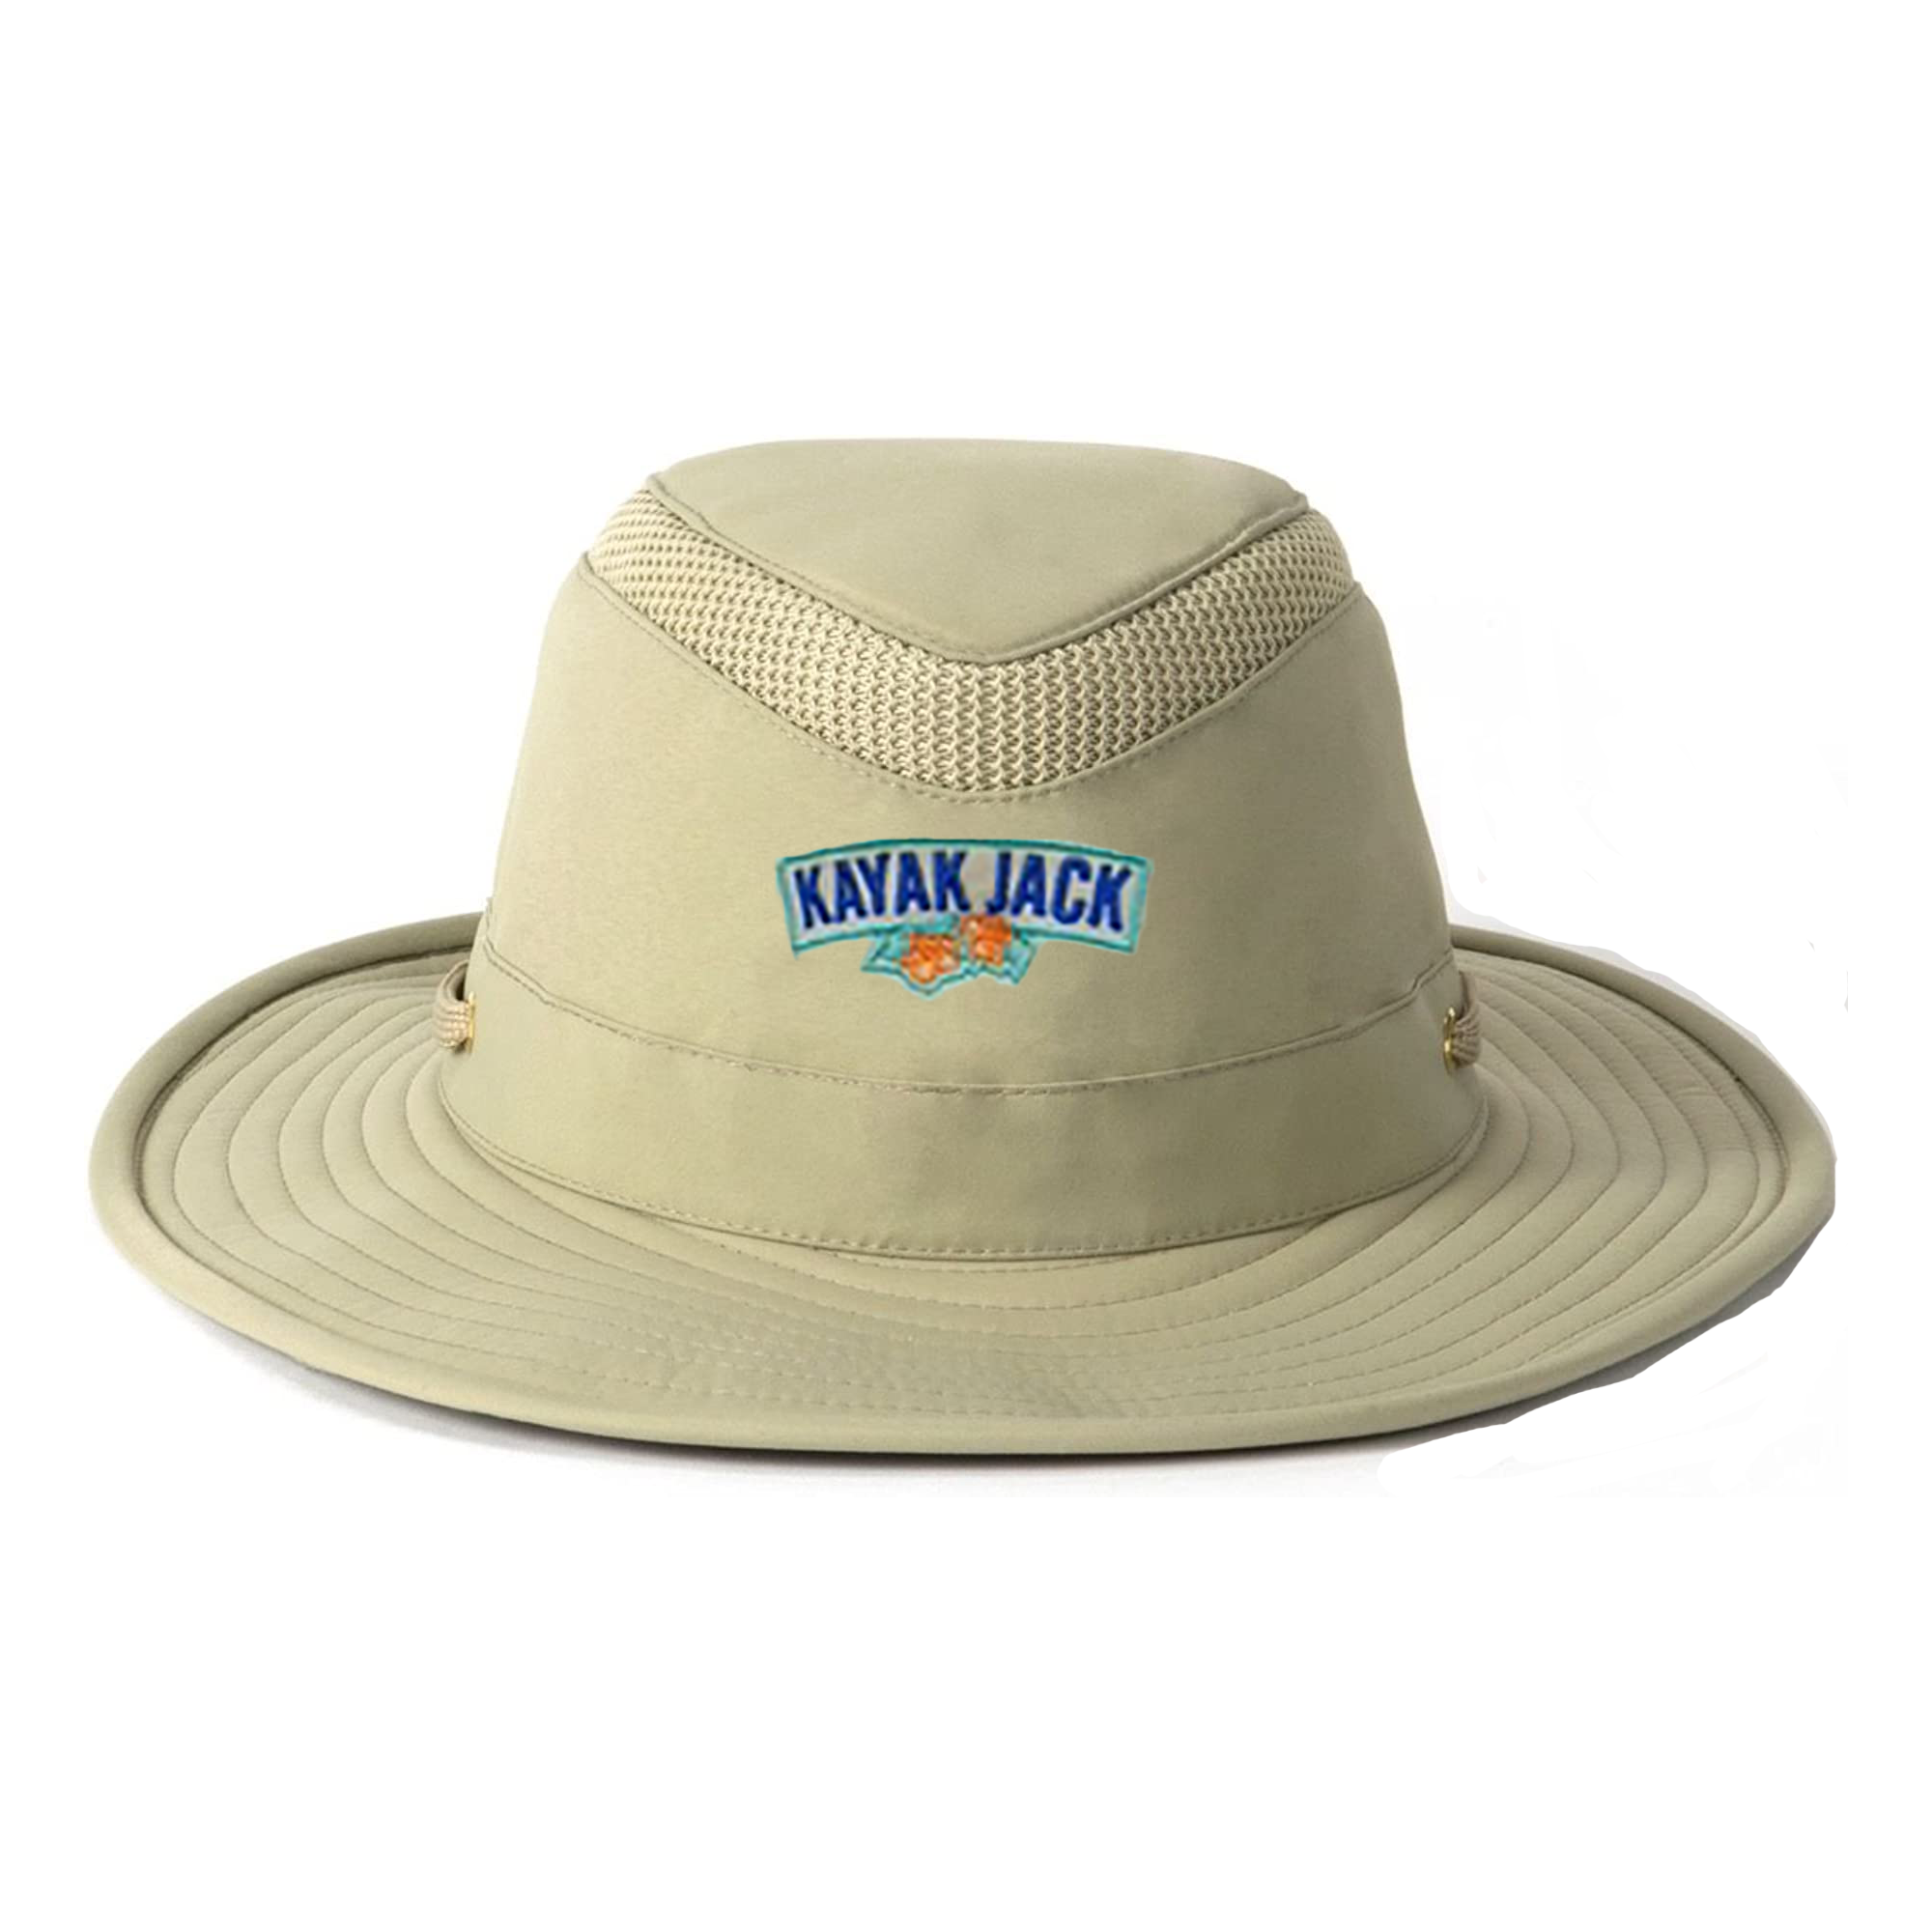 Tilley Airflo Safari Style Boonie Bucket Hat - Kayak Jack